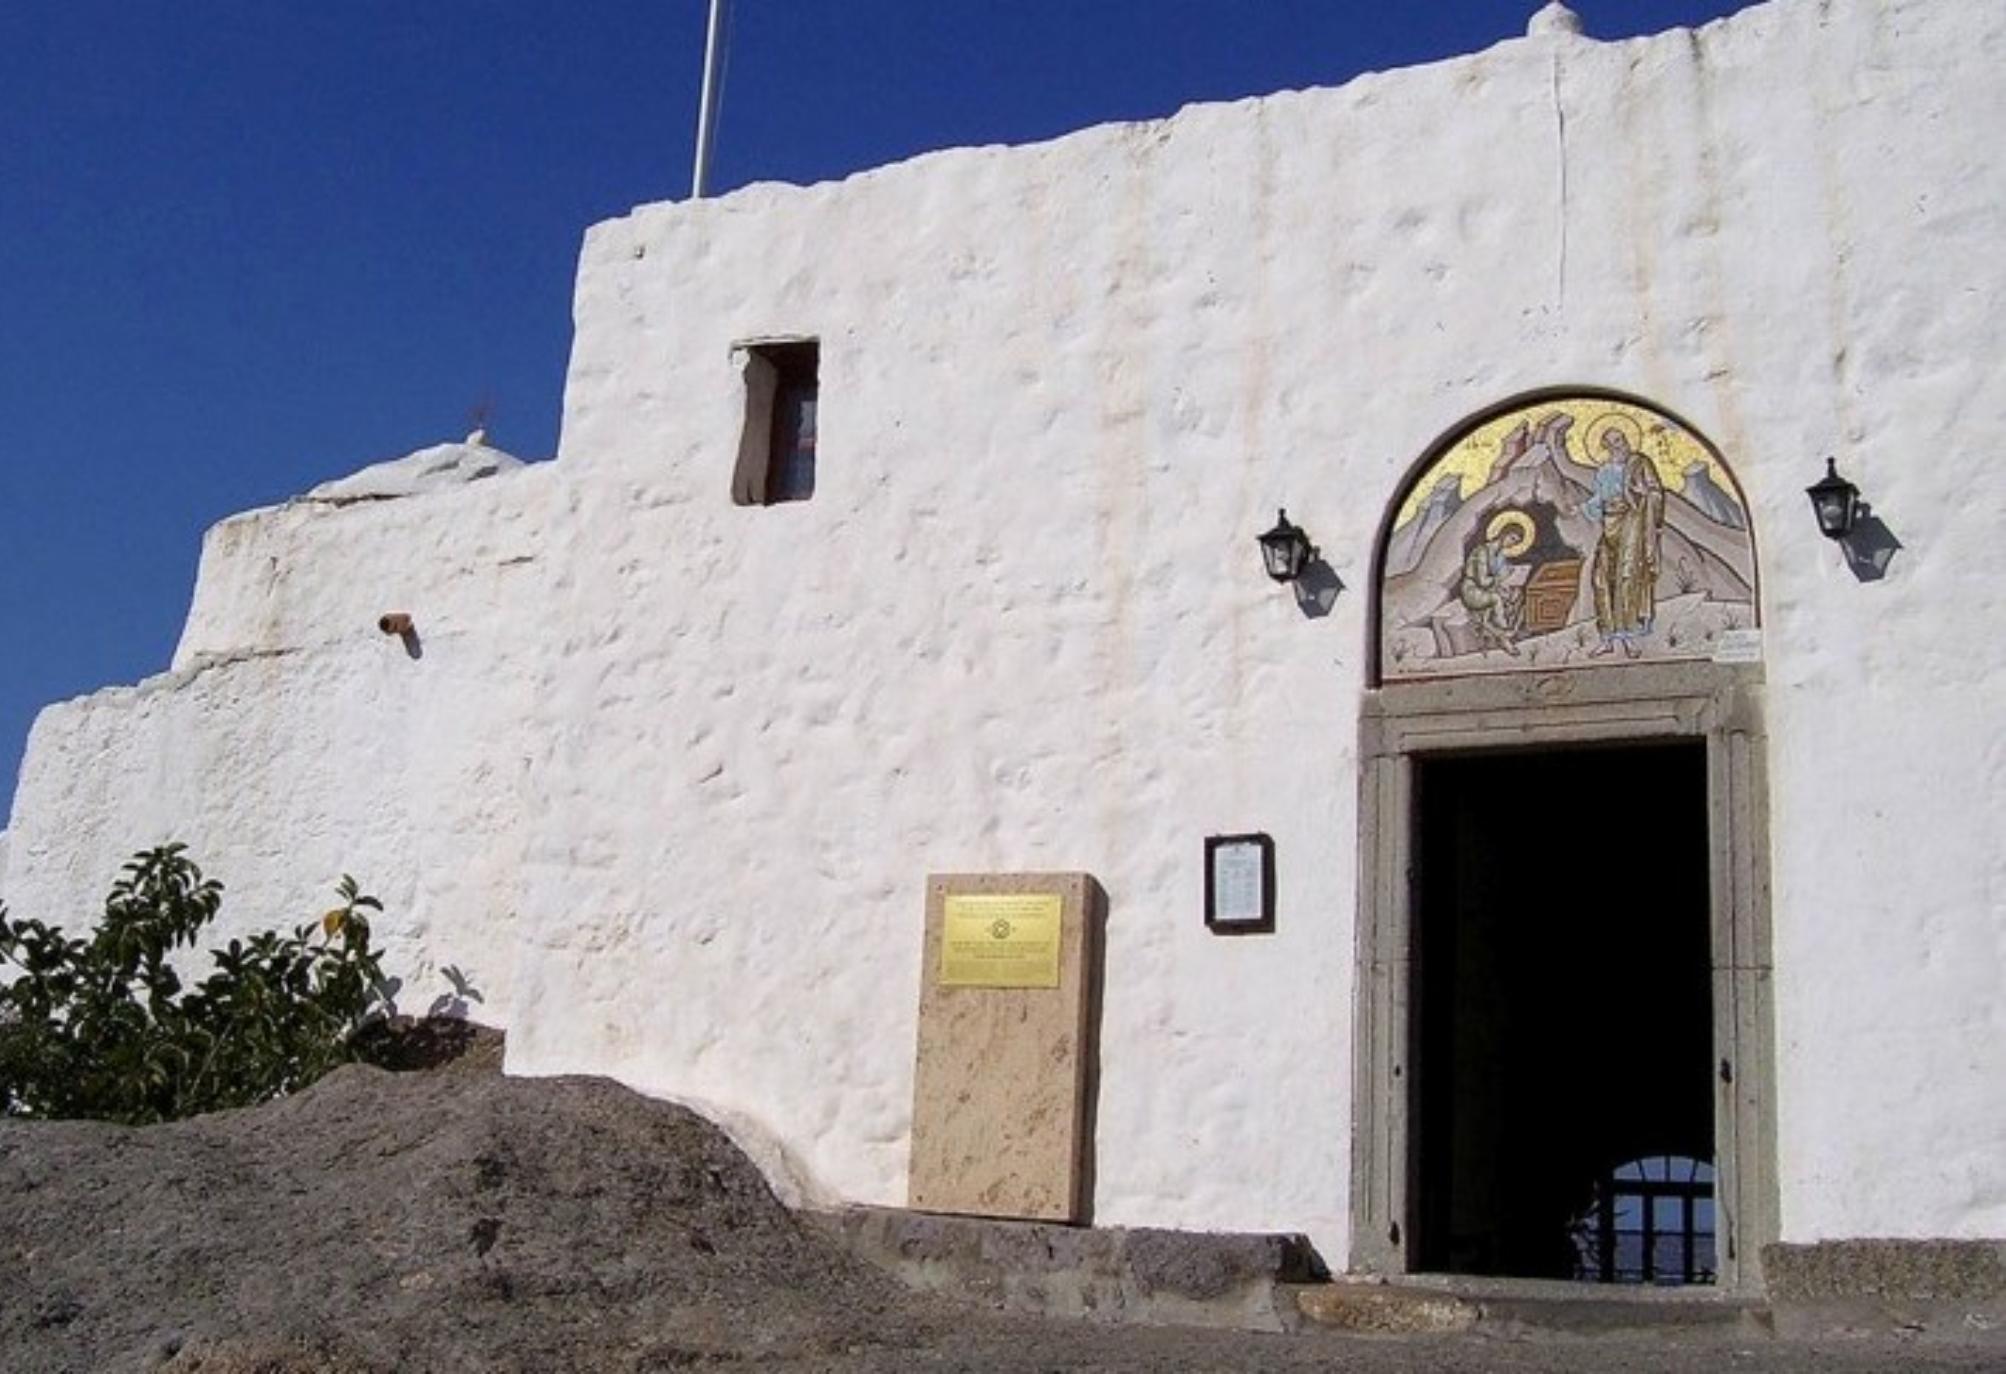 Το Σπήλαιο της Αποκάλυψης στην Πάτμο: Ένα μνημείο παγκόσμιας κληρονομιάς αλλά και τόπος γαλήνης και κατάνυξης όπου ο Θεός μίλησε με στον Άγιο Ιωάννη